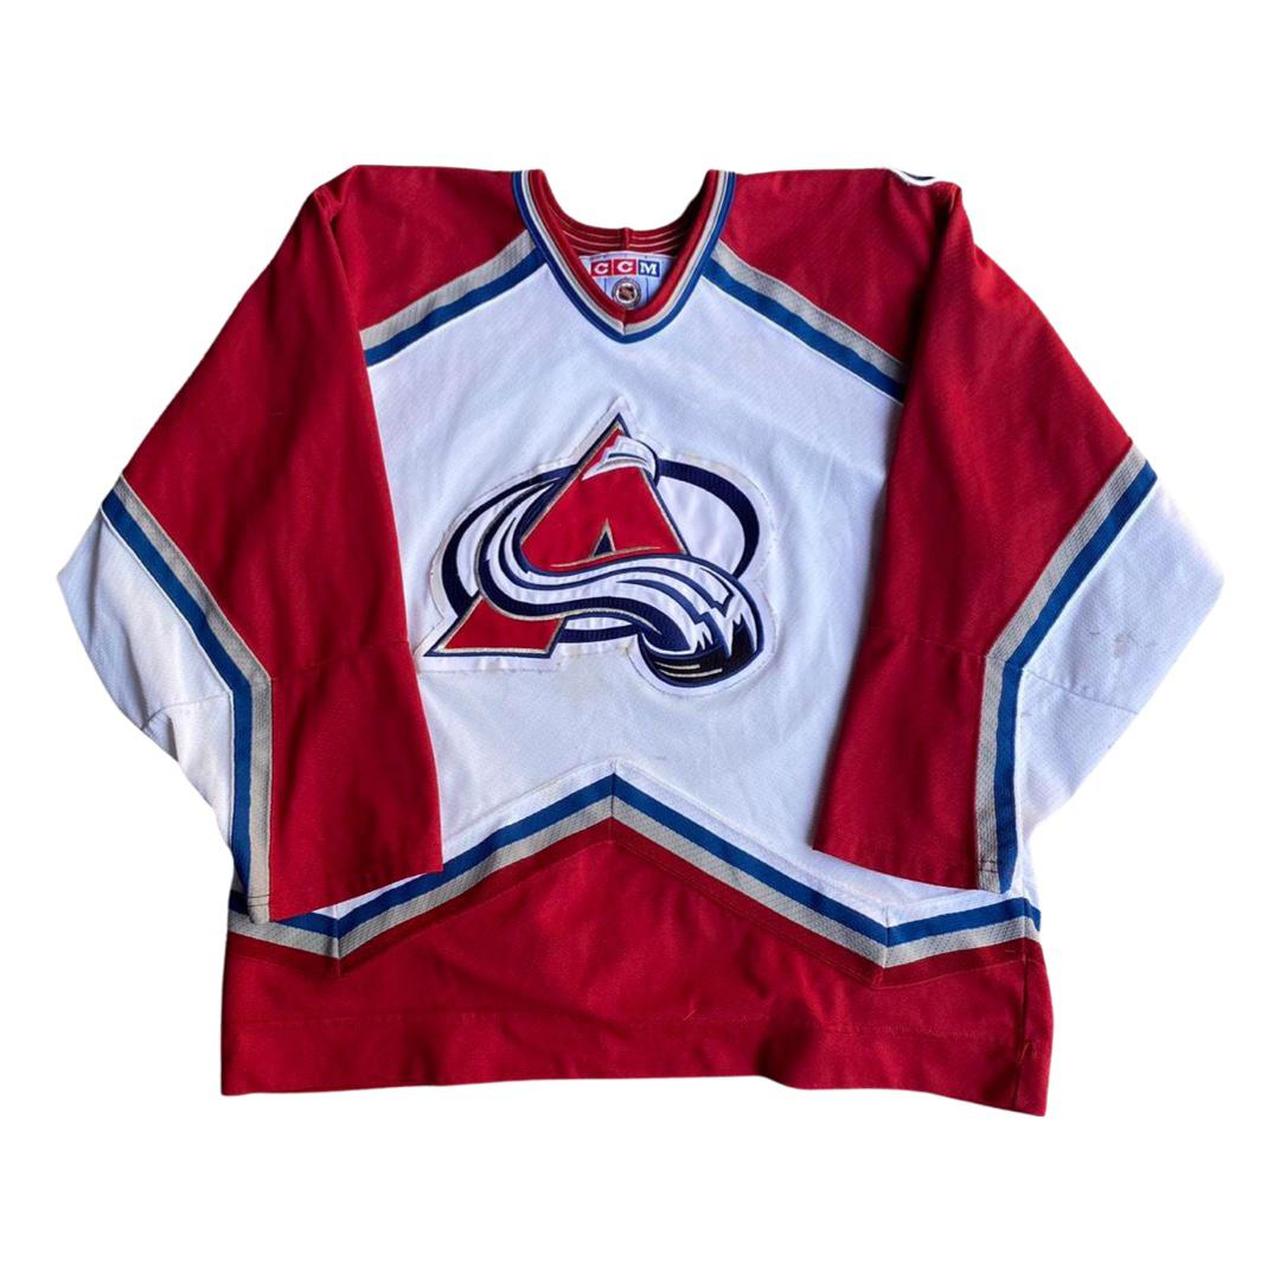 Vintage Colorado Avalanche CCM Hockey Jersey Size Large 90s NHL